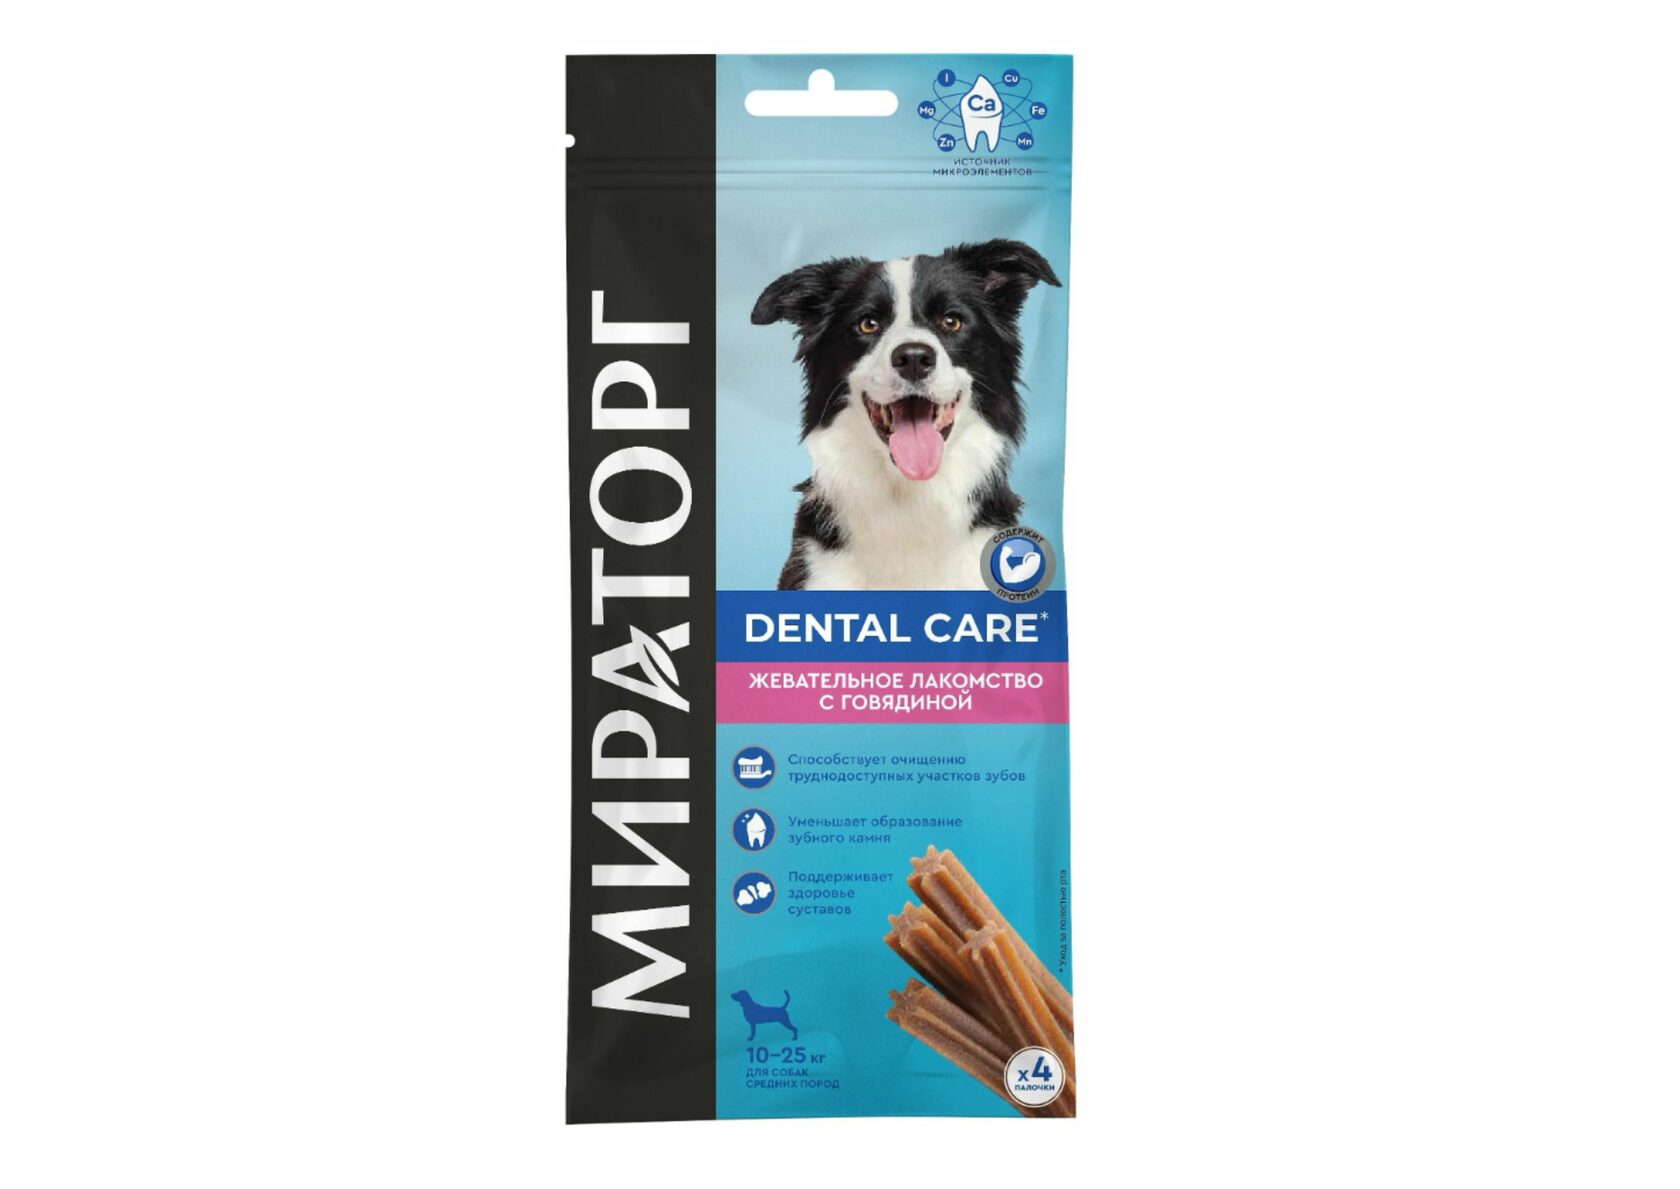 Мираторг Dental Care жевательное лакомство для собак средних пород, с говядиной 70 гр